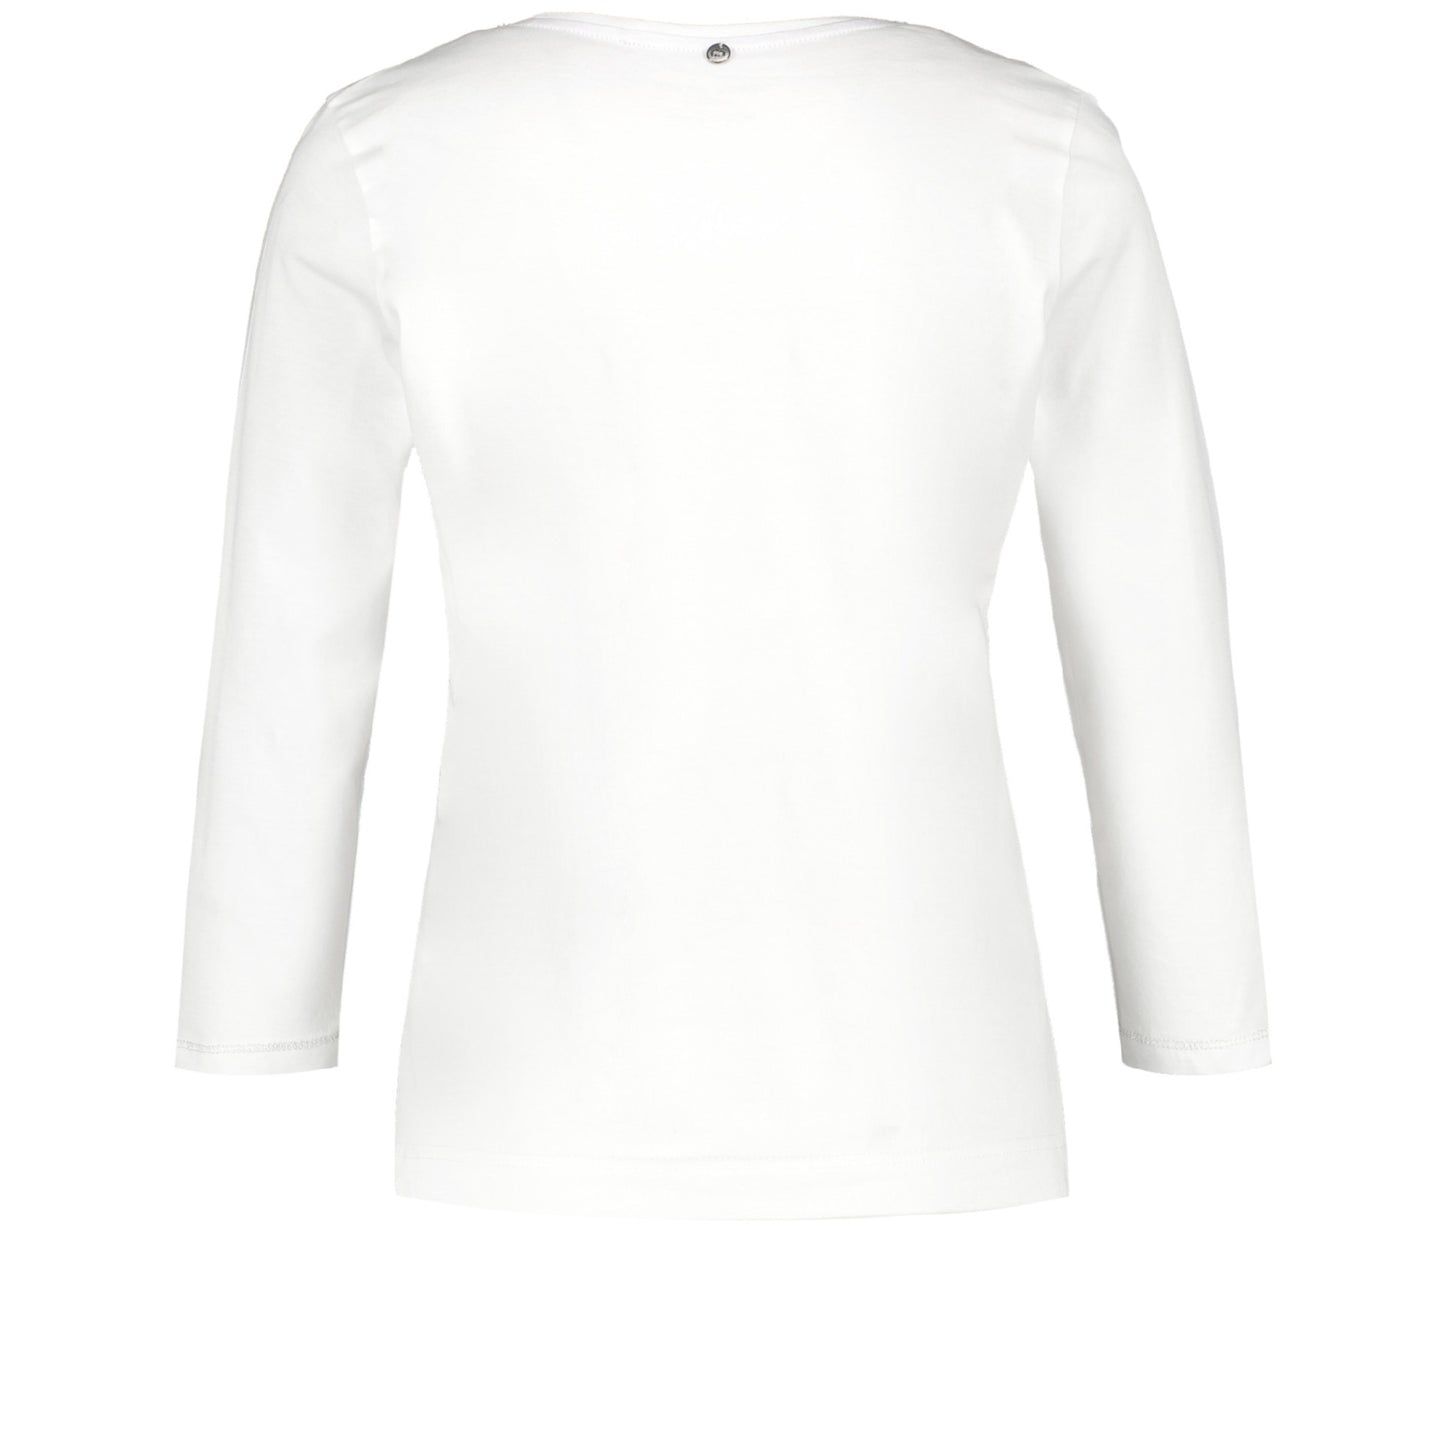 Gerry Weber 870022 44019 99700 Off White T-Shirt